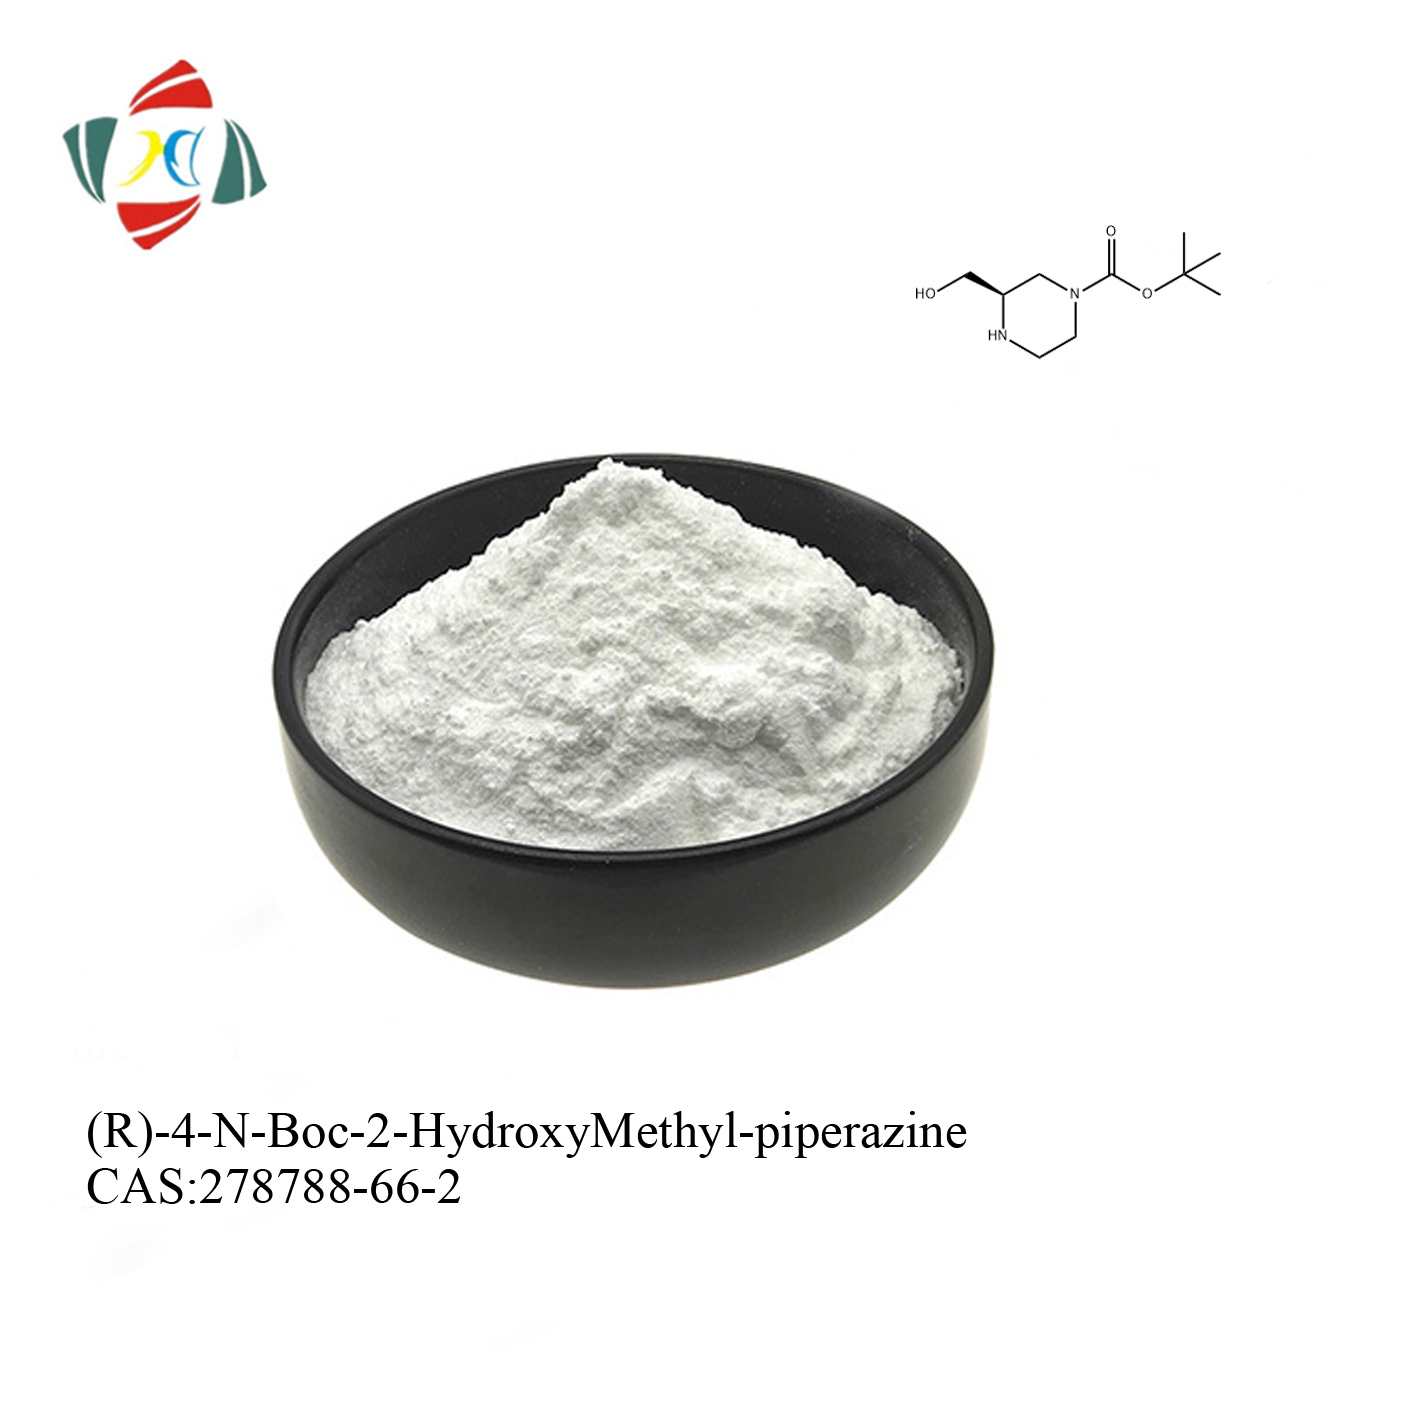 (R)-4-N-Boc-2-HydroxyMethyl-piperazine CAS 278788-66-2